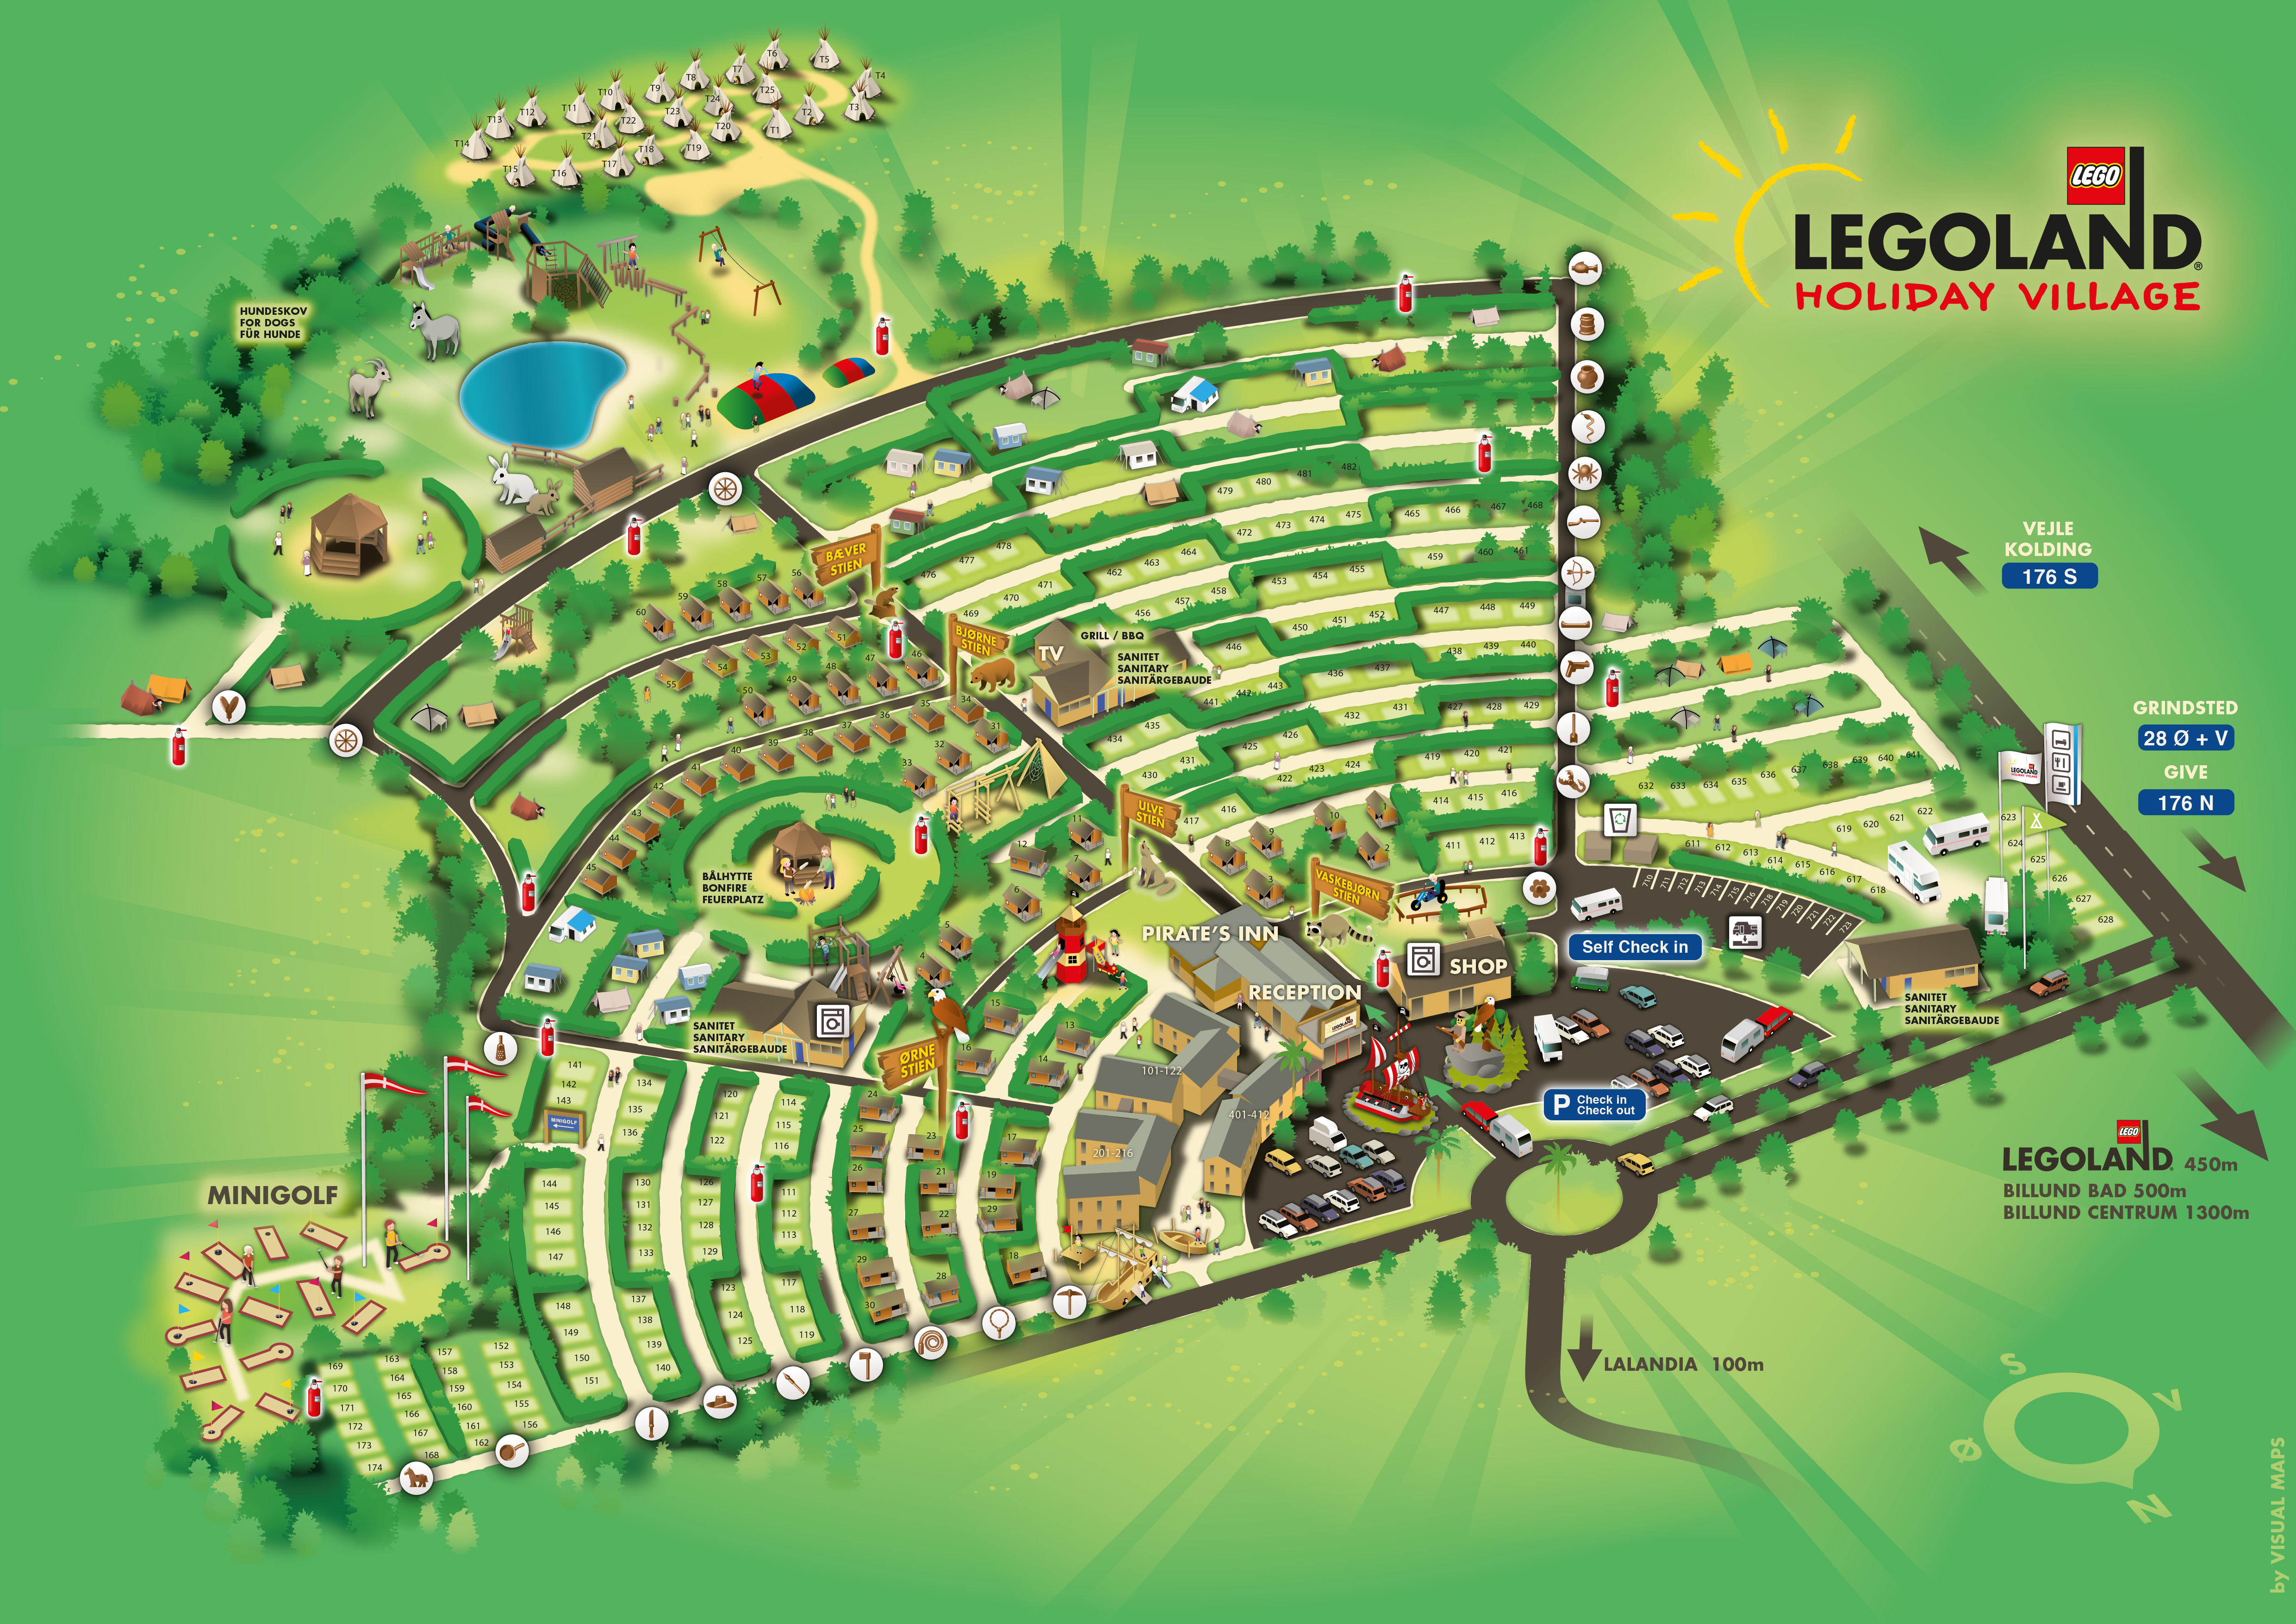 Legoland holiday village